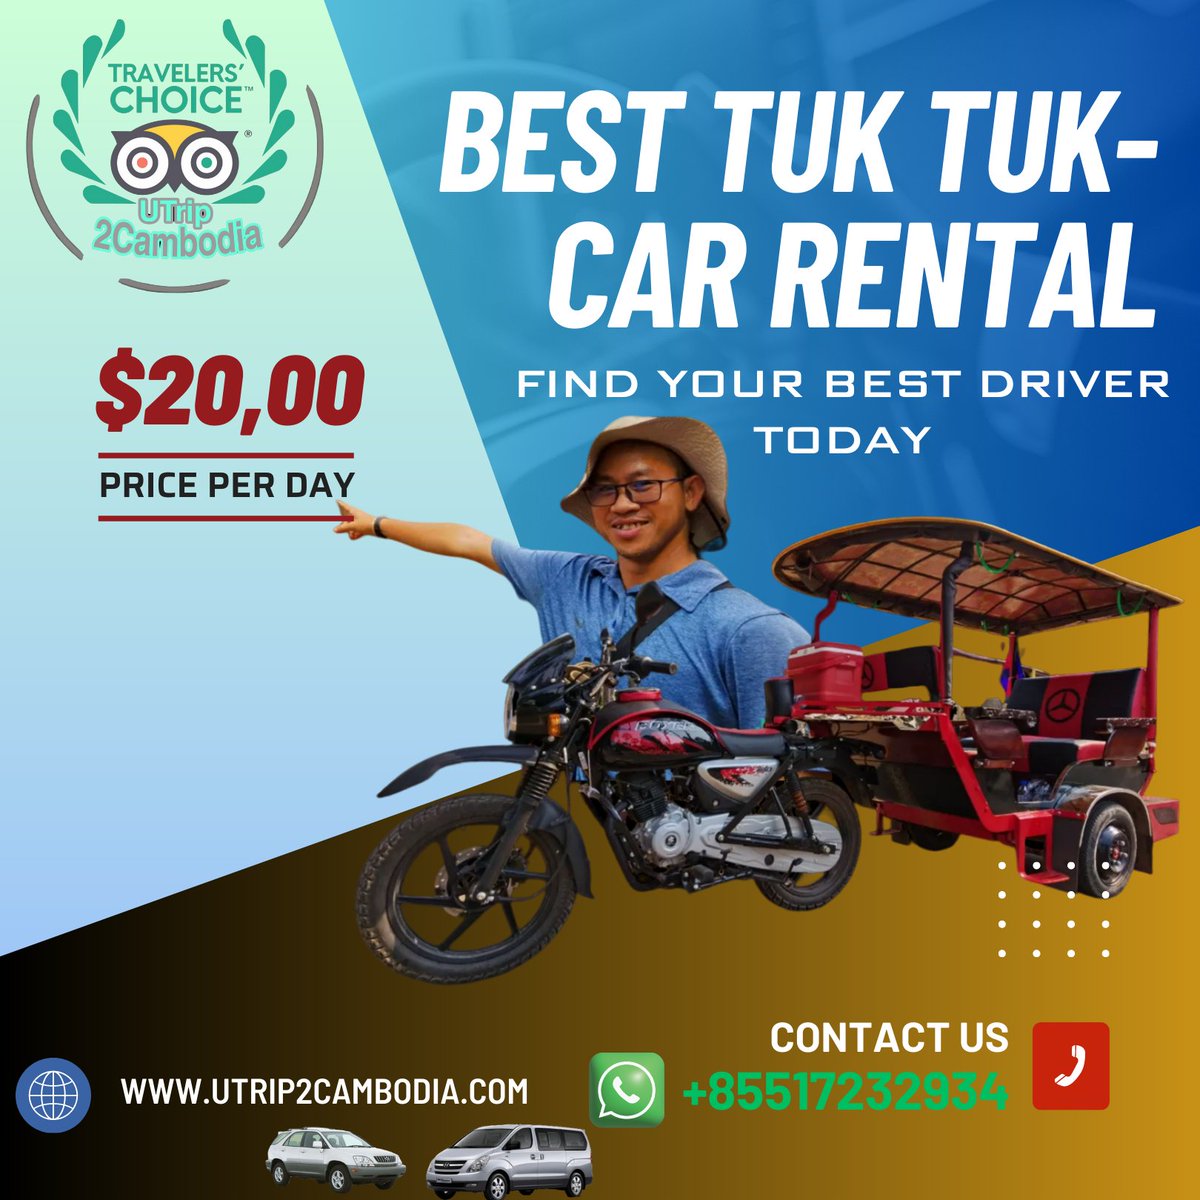 Welcome to #siemreapcity with your #personaltuktukdriver #tuktuk #travel #tuktukride #travelphotography #cambodia #angkorwattemple #travelgram #tuktuktour #tuktuklife #tuktuks 
join us now : utrip2cambodia.com
whatsapp/telegram: +85517232934